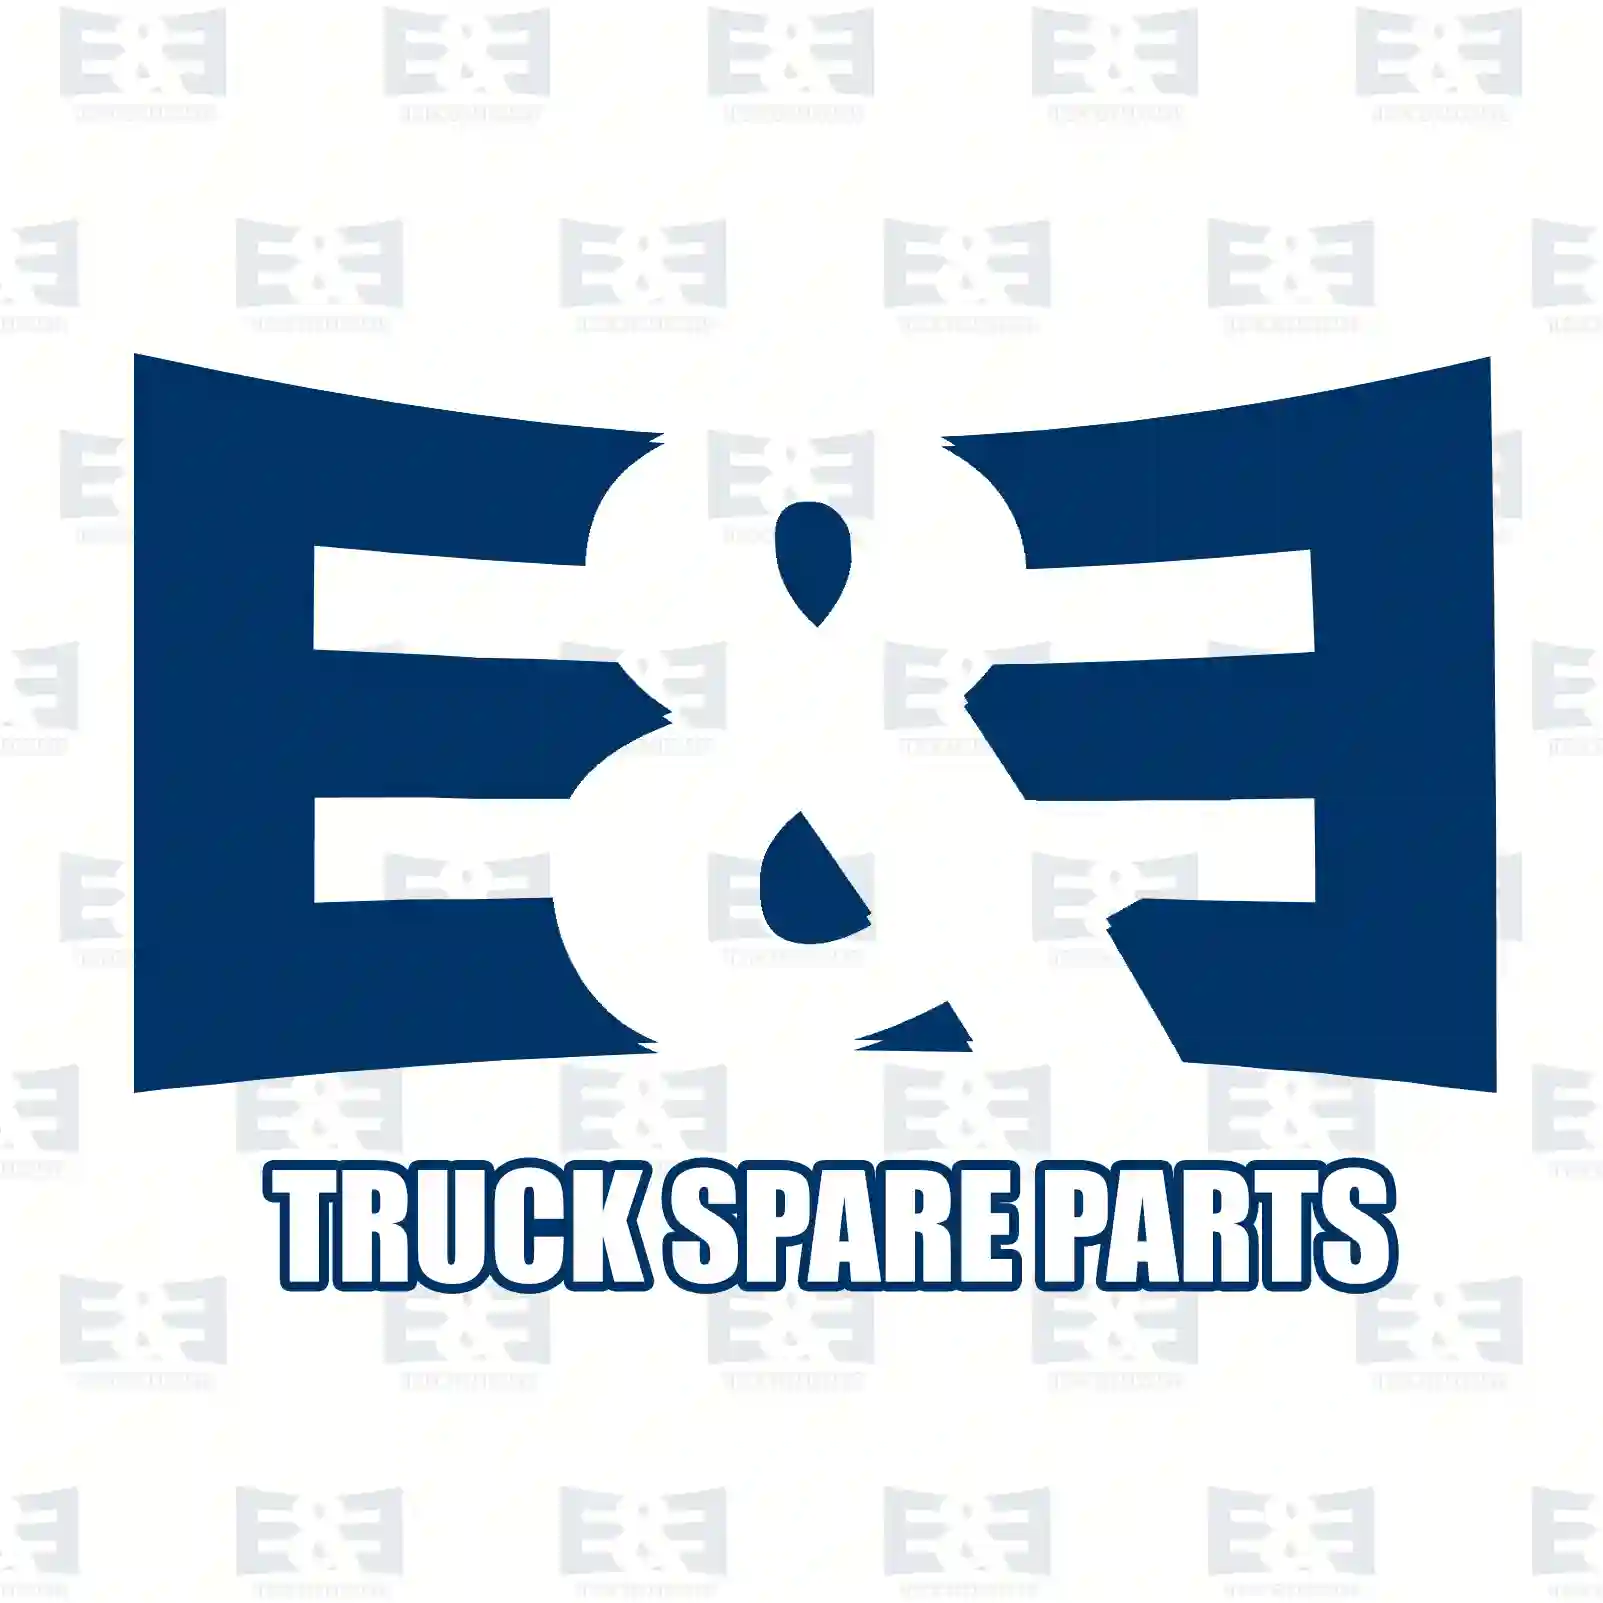 Shifting segment, 2E2278572, 2670346, 1527329 ||  2E2278572 E&E Truck Spare Parts | Truck Spare Parts, Auotomotive Spare Parts Shifting segment, 2E2278572, 2670346, 1527329 ||  2E2278572 E&E Truck Spare Parts | Truck Spare Parts, Auotomotive Spare Parts